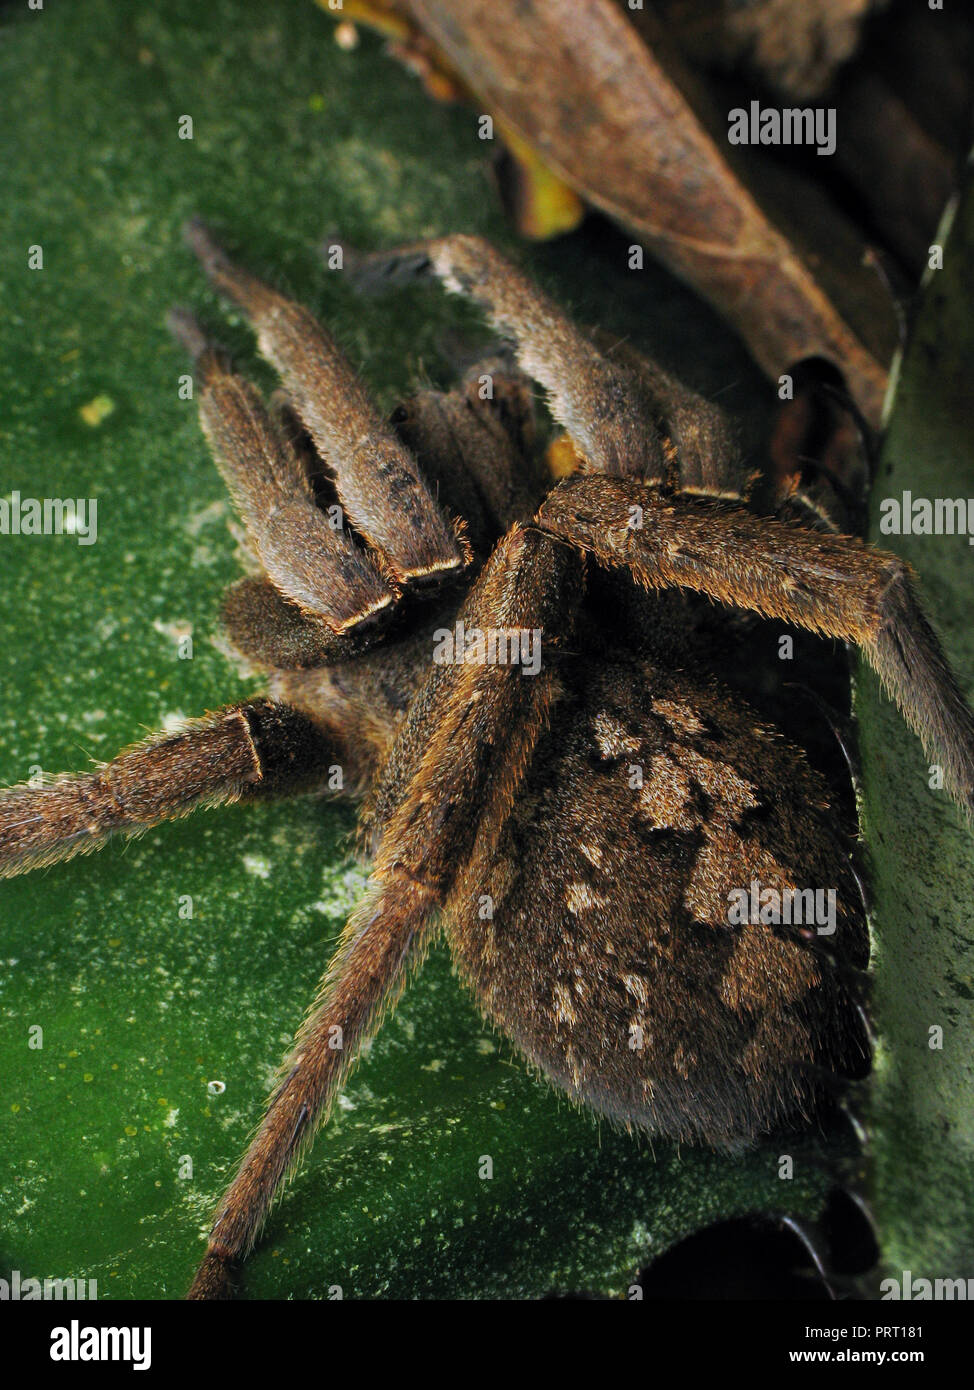 Il ragno velenoso Phoneutria nigriventer (brasiliano ragno errante, armadeira) top view macro che mostra i modelli di addome. Da sud-est del Brasile. Foto Stock